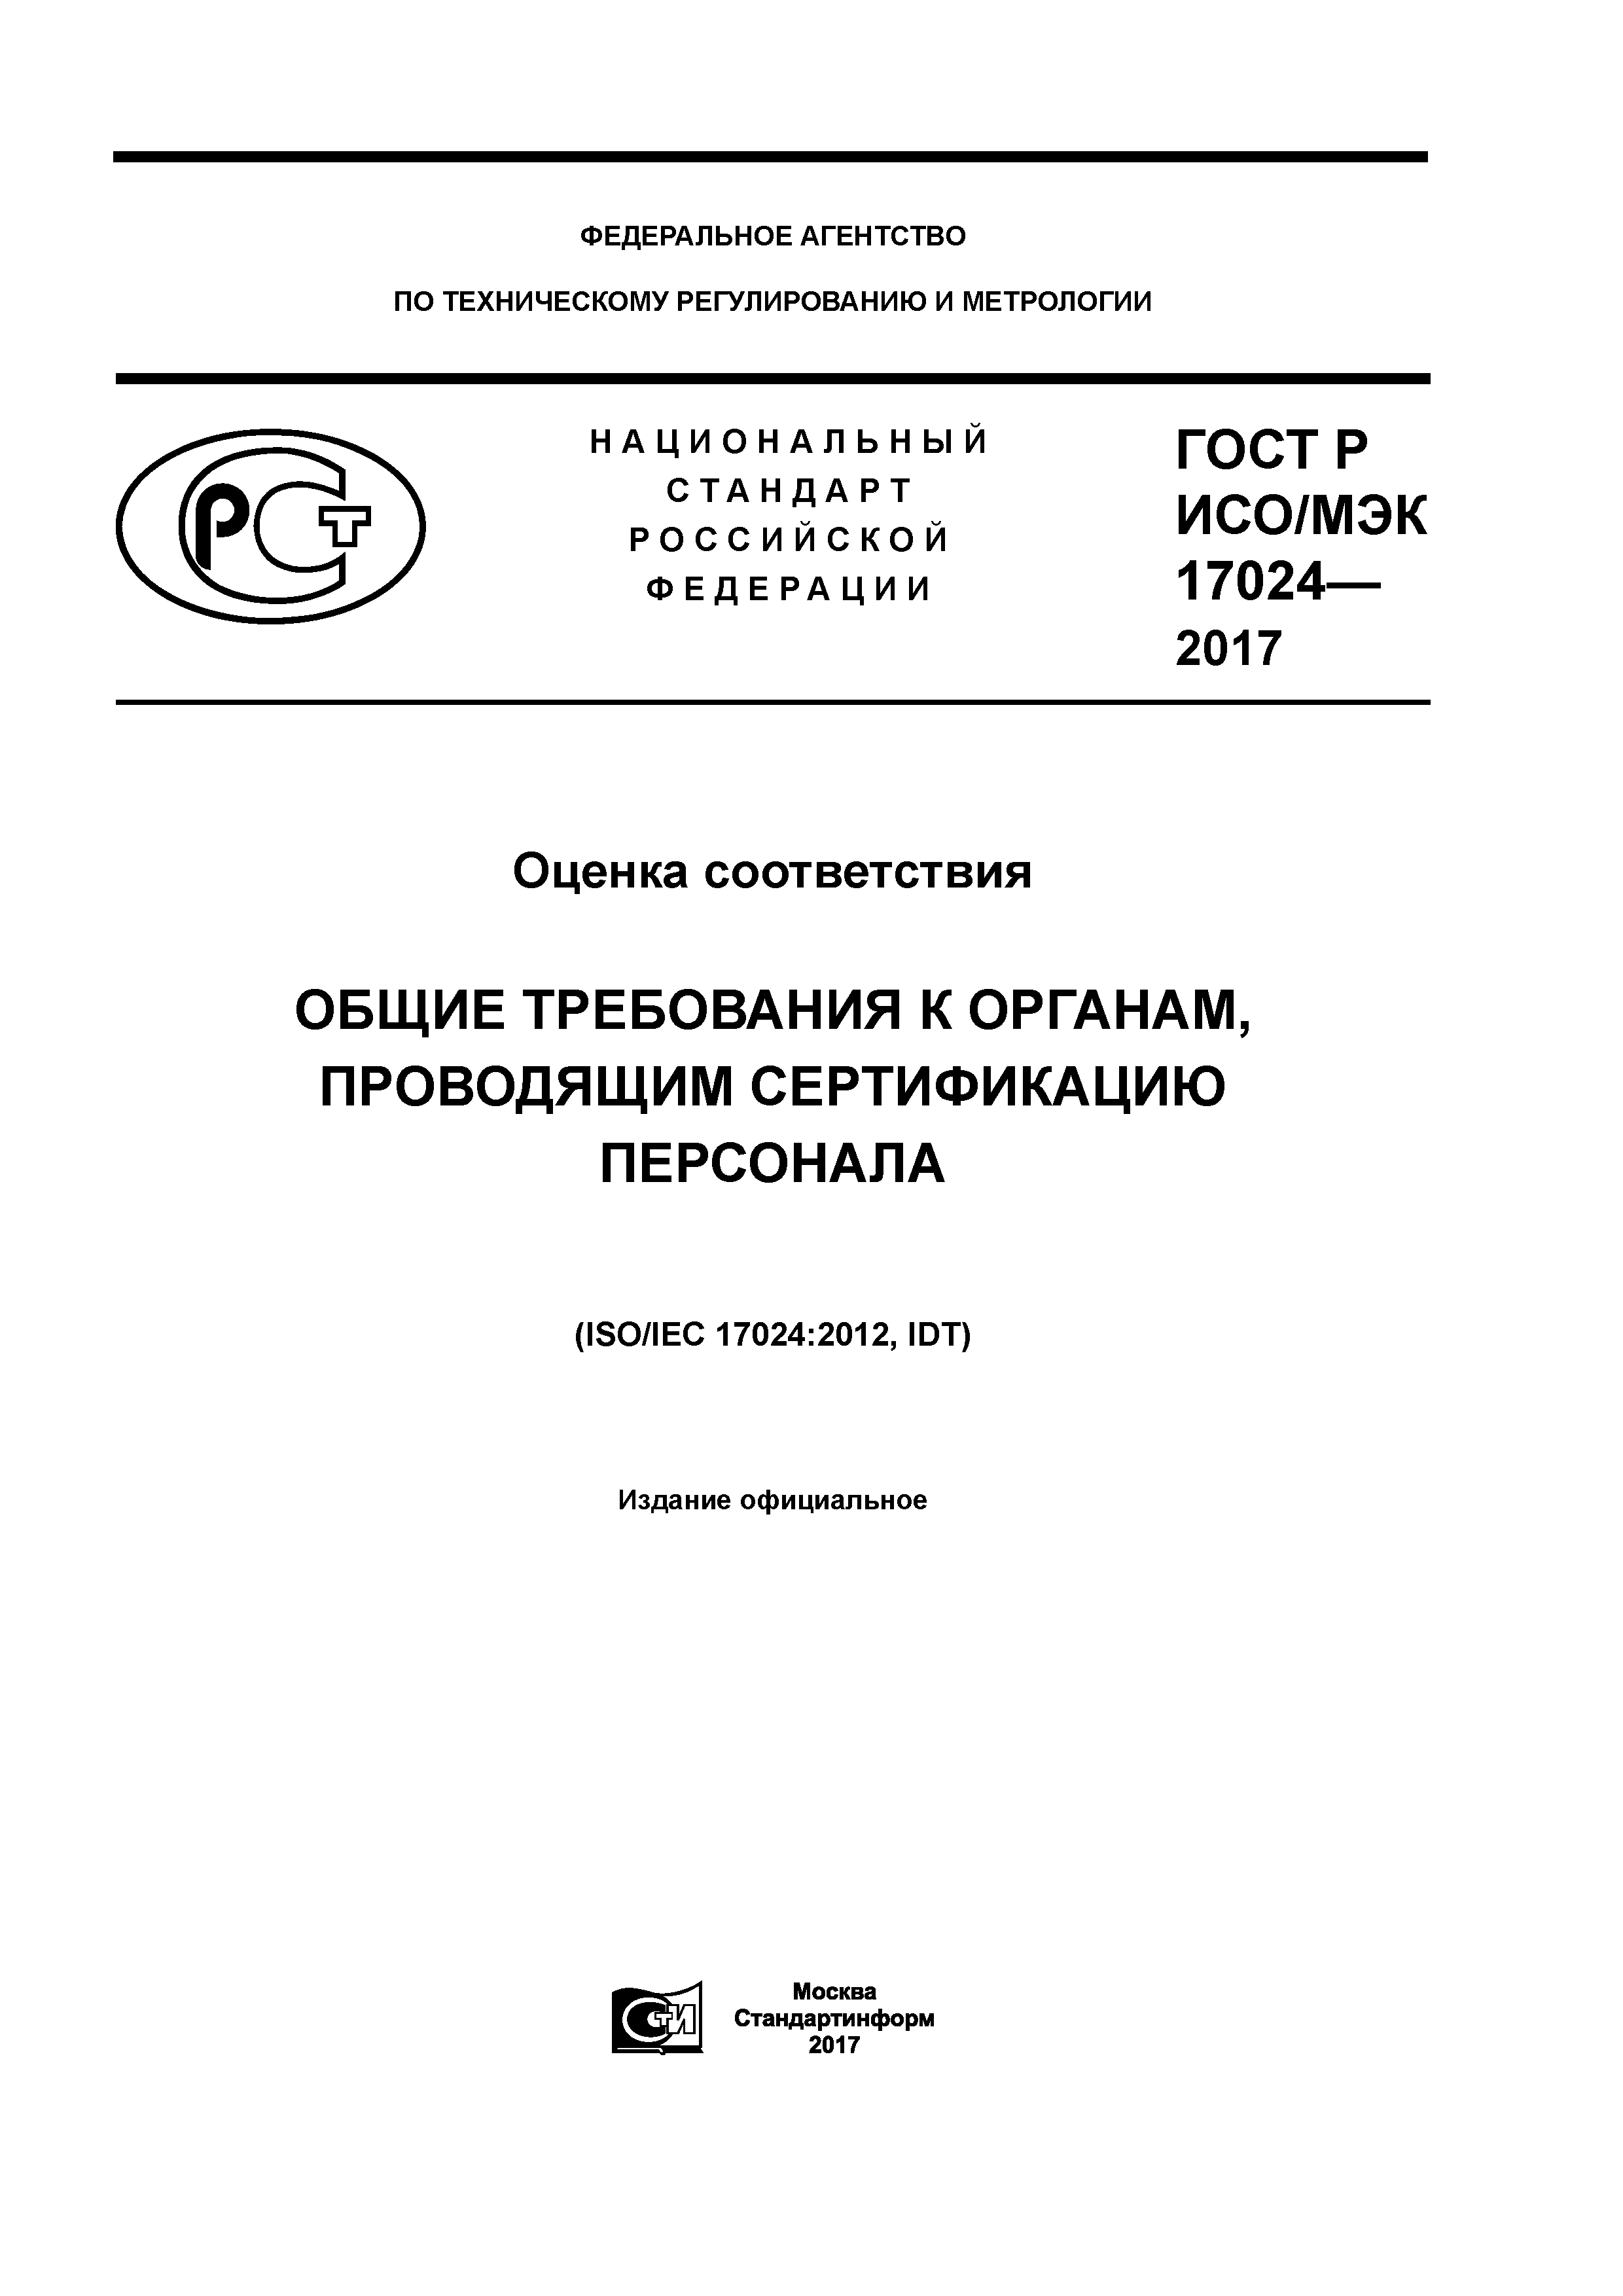 ГОСТ Р ИСО/МЭК 17024-2017